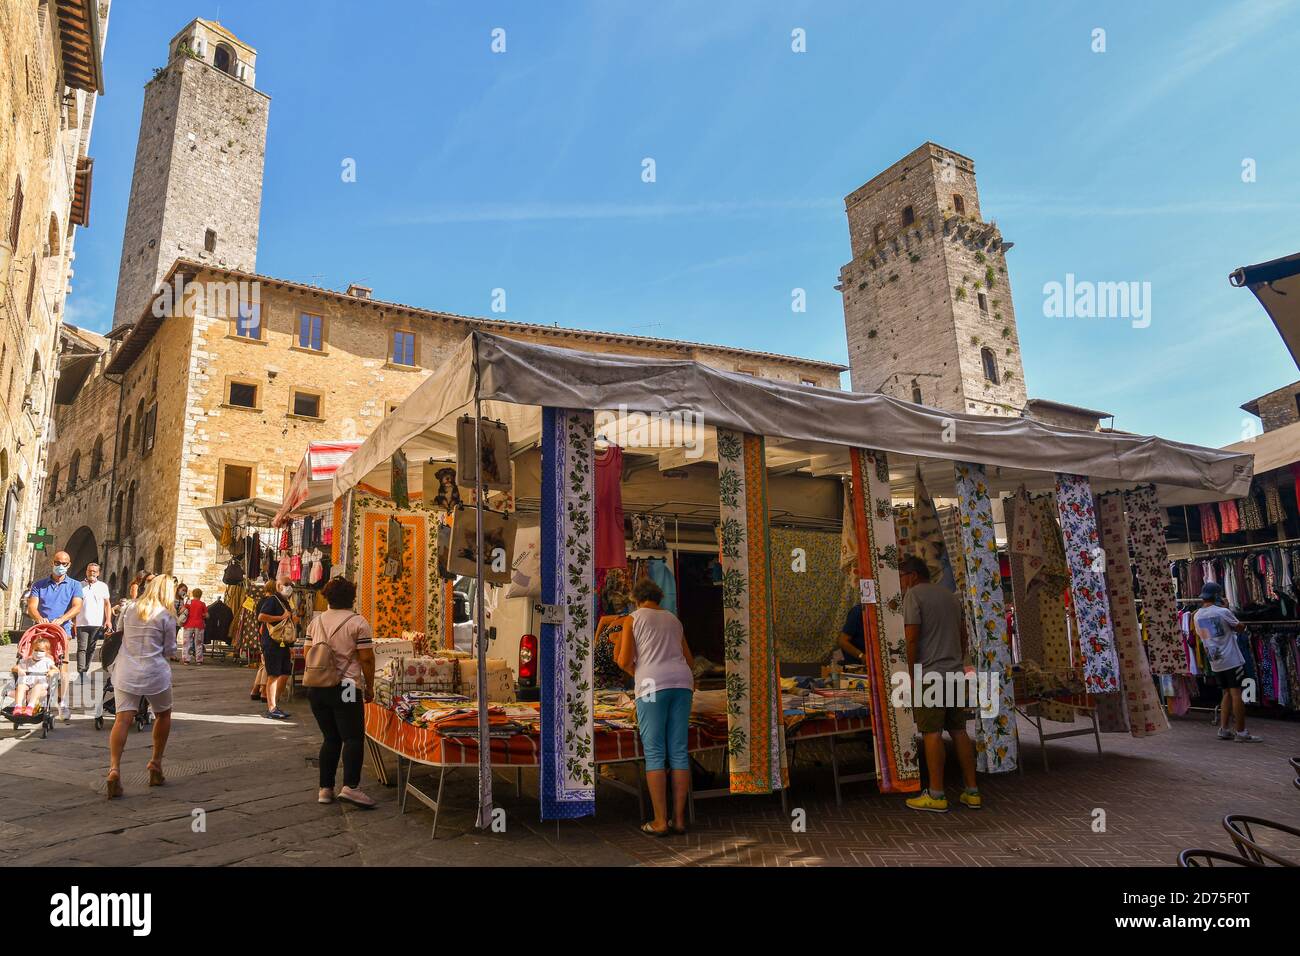 Piazza della Cisterna dans la vieille ville de San Gimignano, UNESCO W.H. Site, avec la Torre del Diavolo pendant le marché hebdomadaire, Sienne, Toscane, Italie Banque D'Images